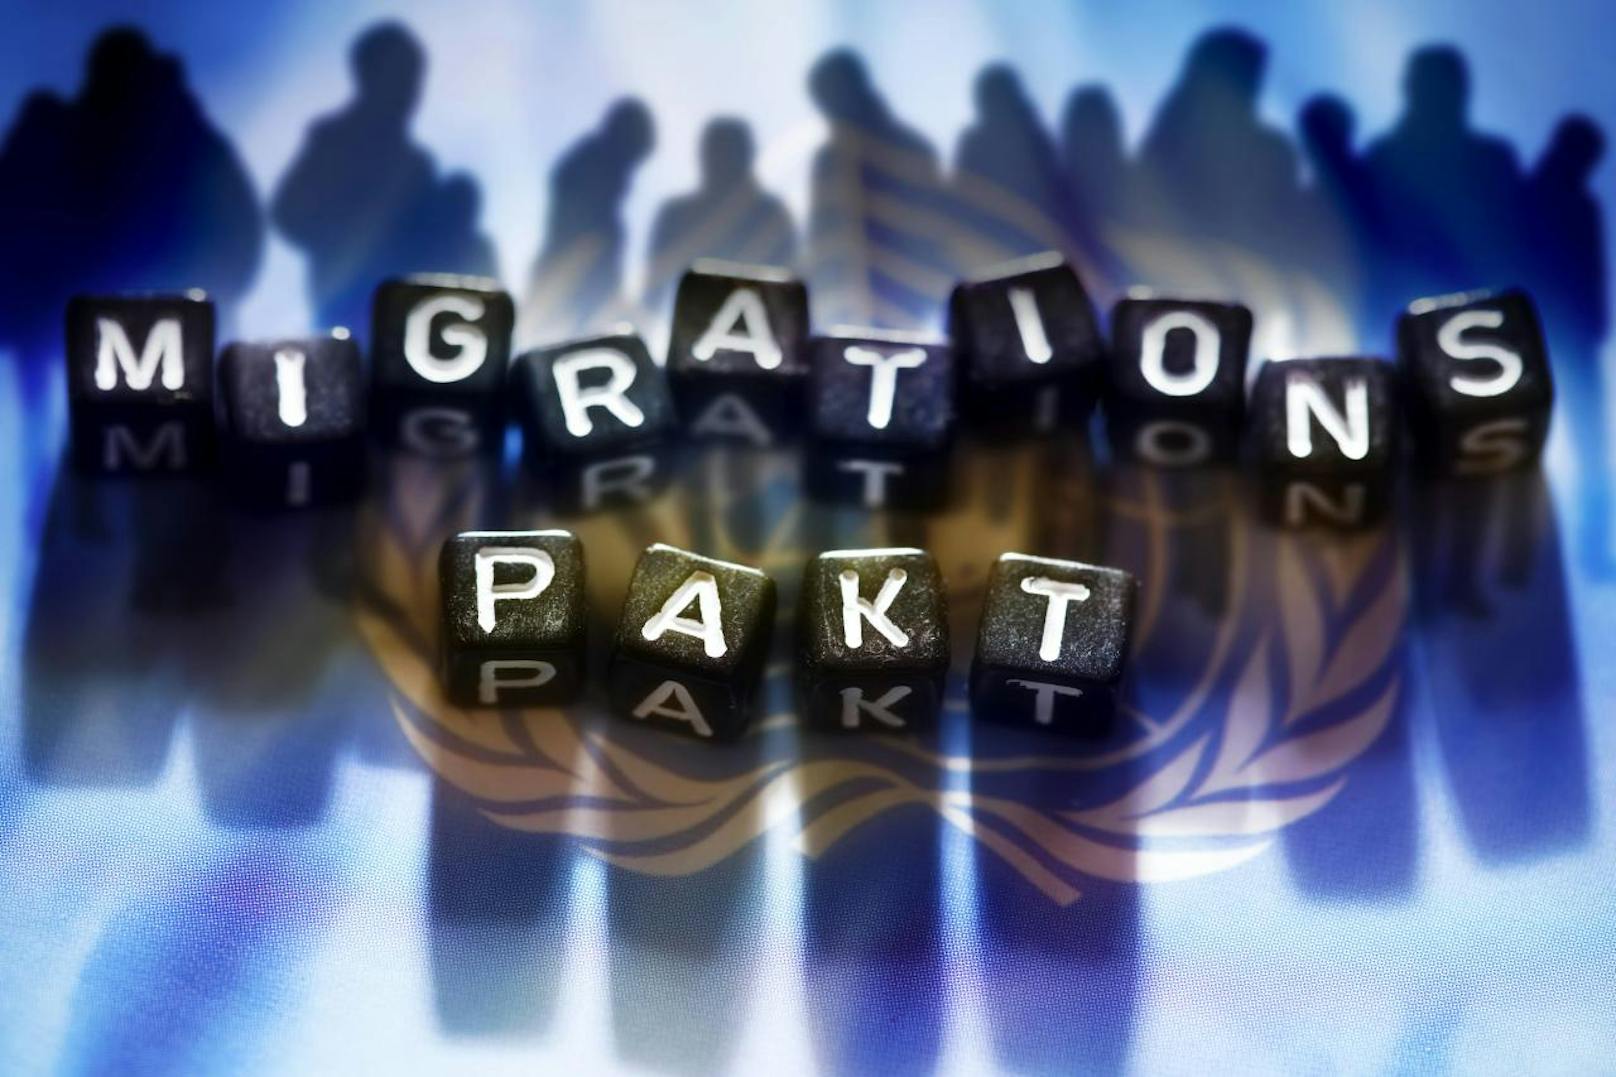 All diese Länder unterzeichnen den UN-Migrationspakt nicht >>>